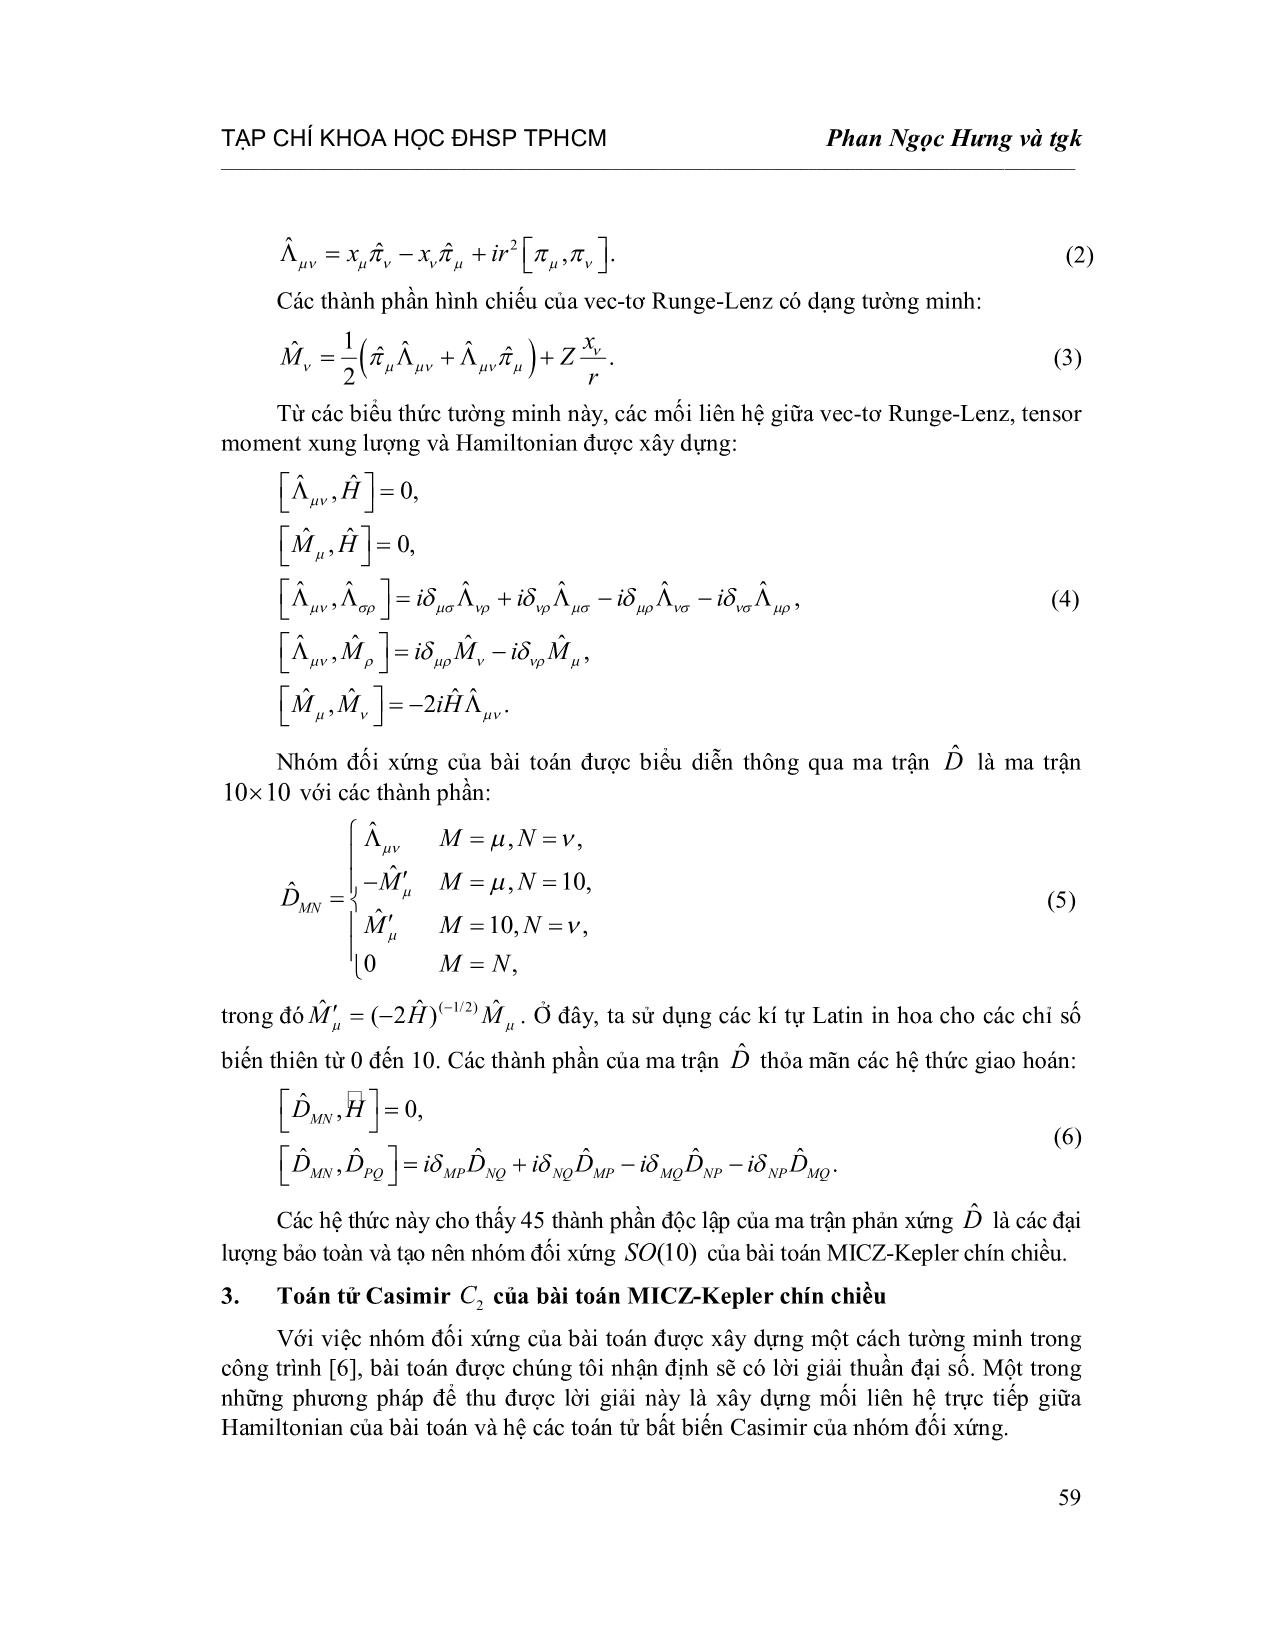 Toán tử Casimir C2 cho nhóm đối xứng SO(10) của bài toán Micz-Kepler chín chiều trang 3